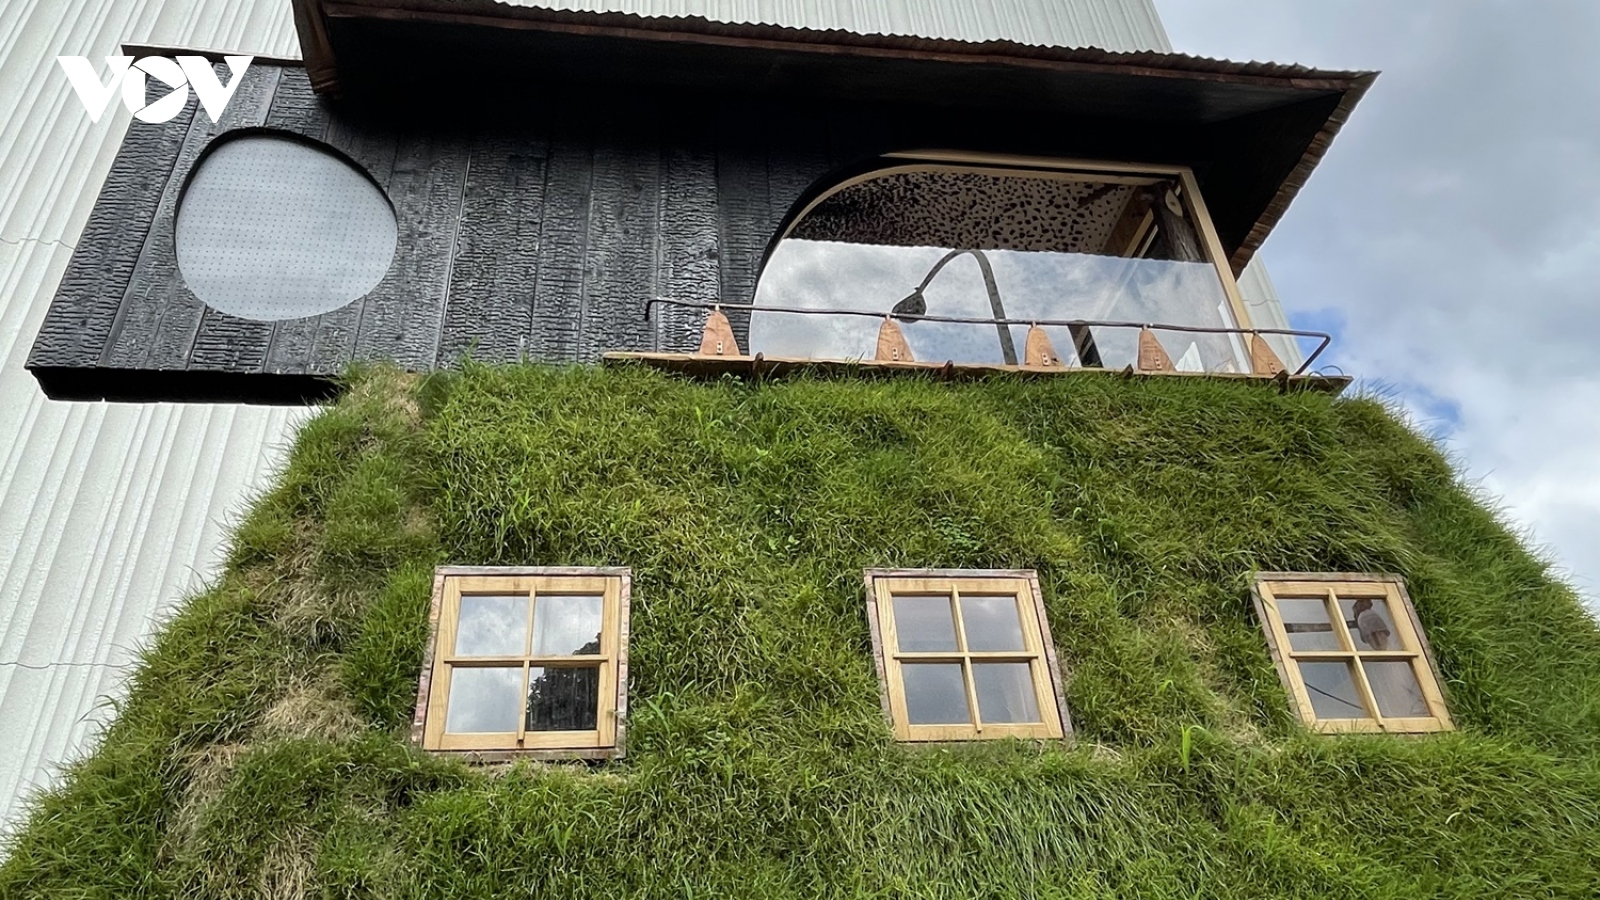 Độc đáo Trà thất làm bằng cỏ tại Nhật Bản